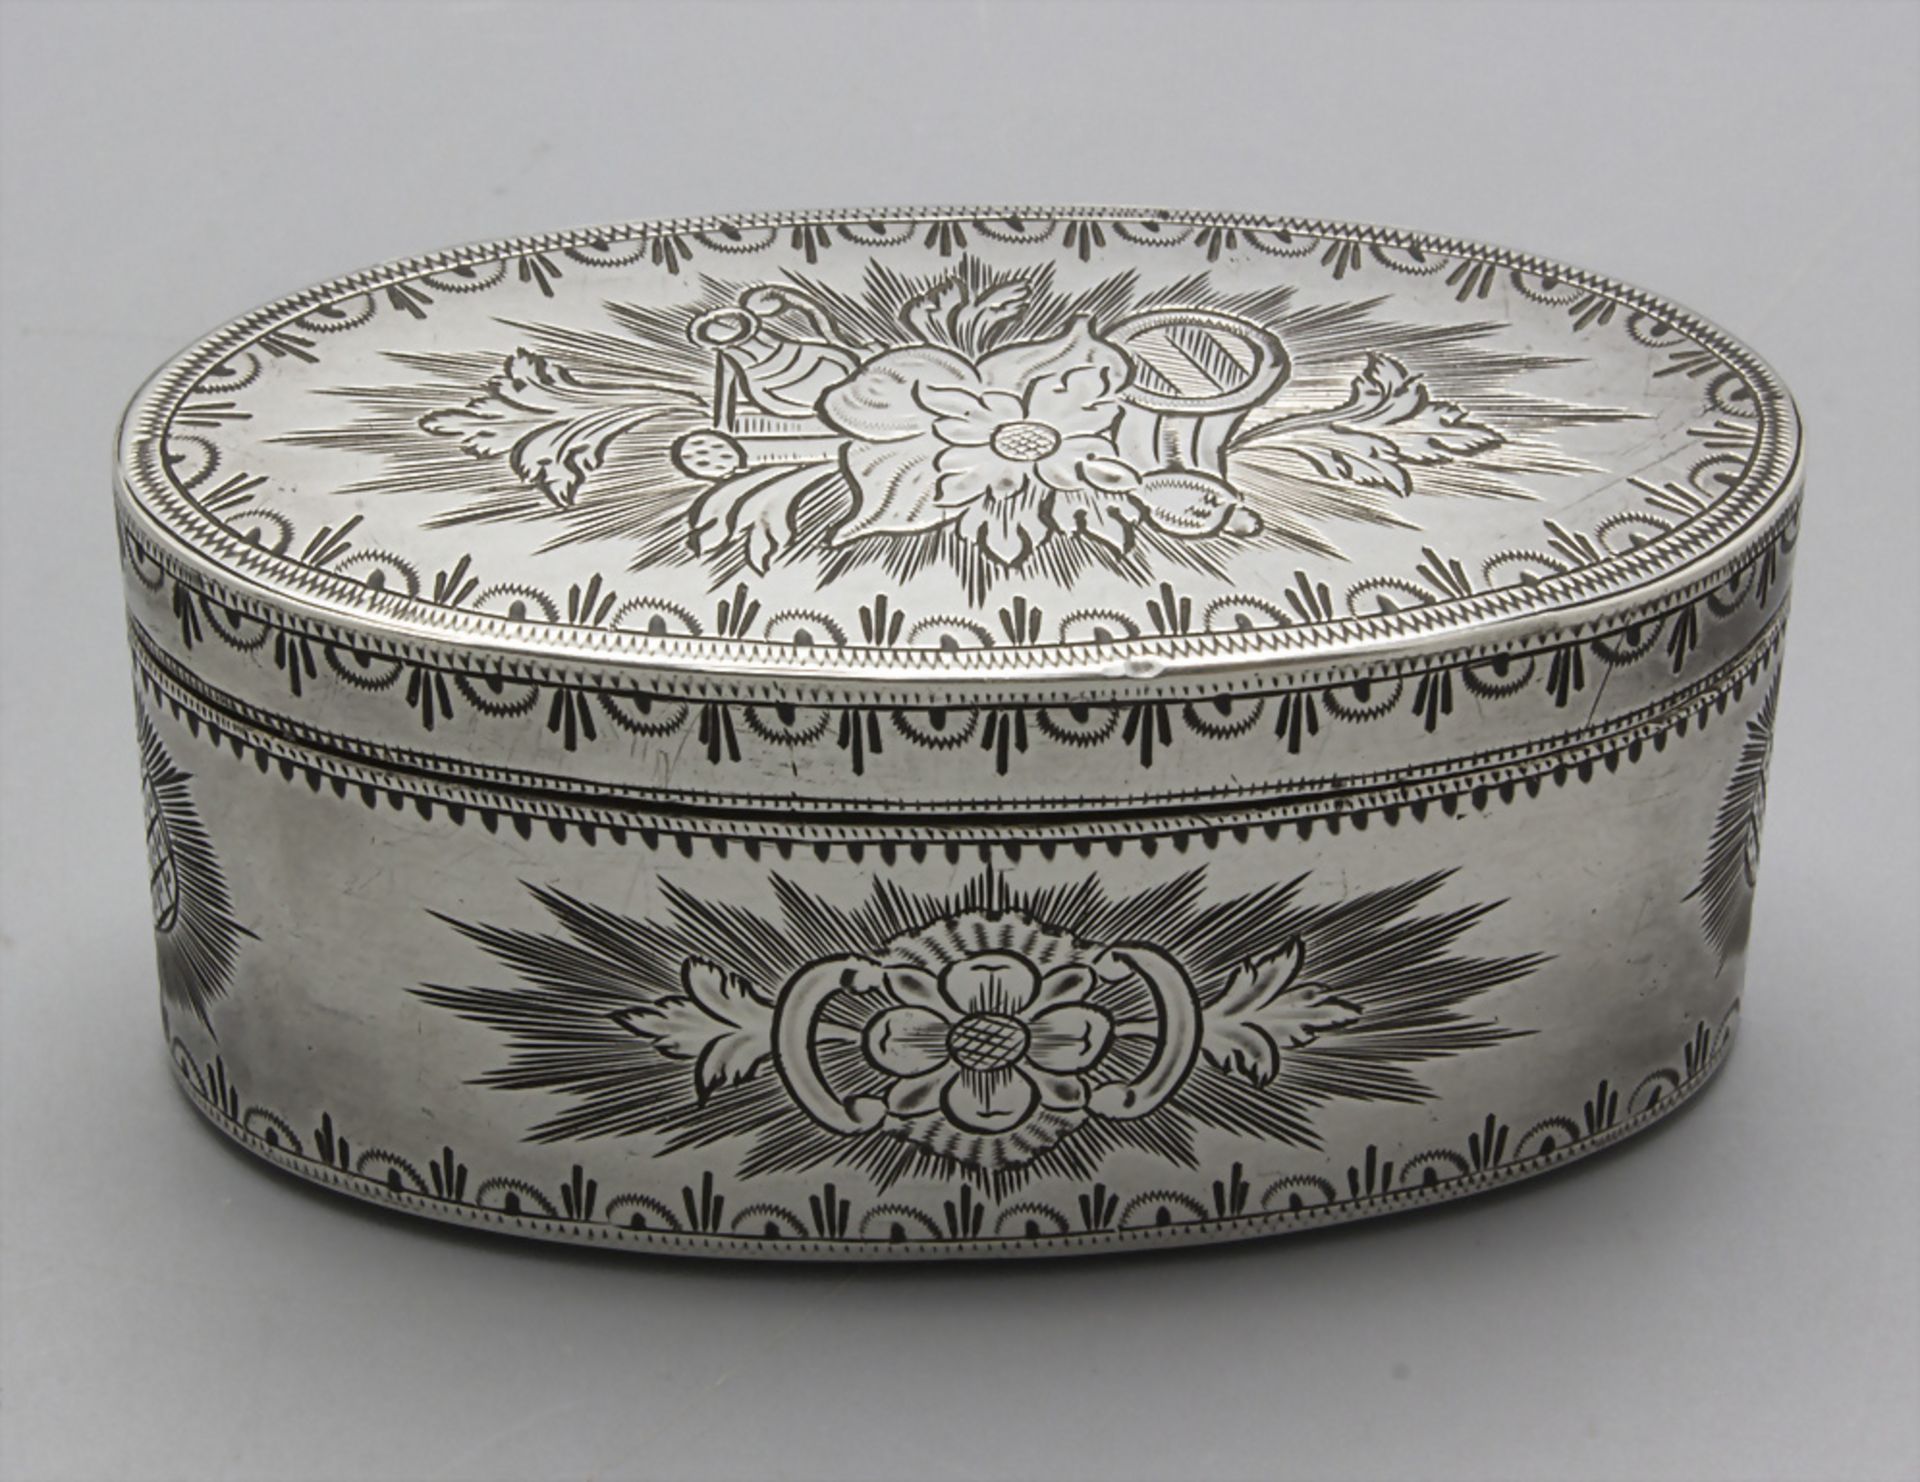 Tabatiere / Boite en argent massif / A silver snuff box, Ath, 1778